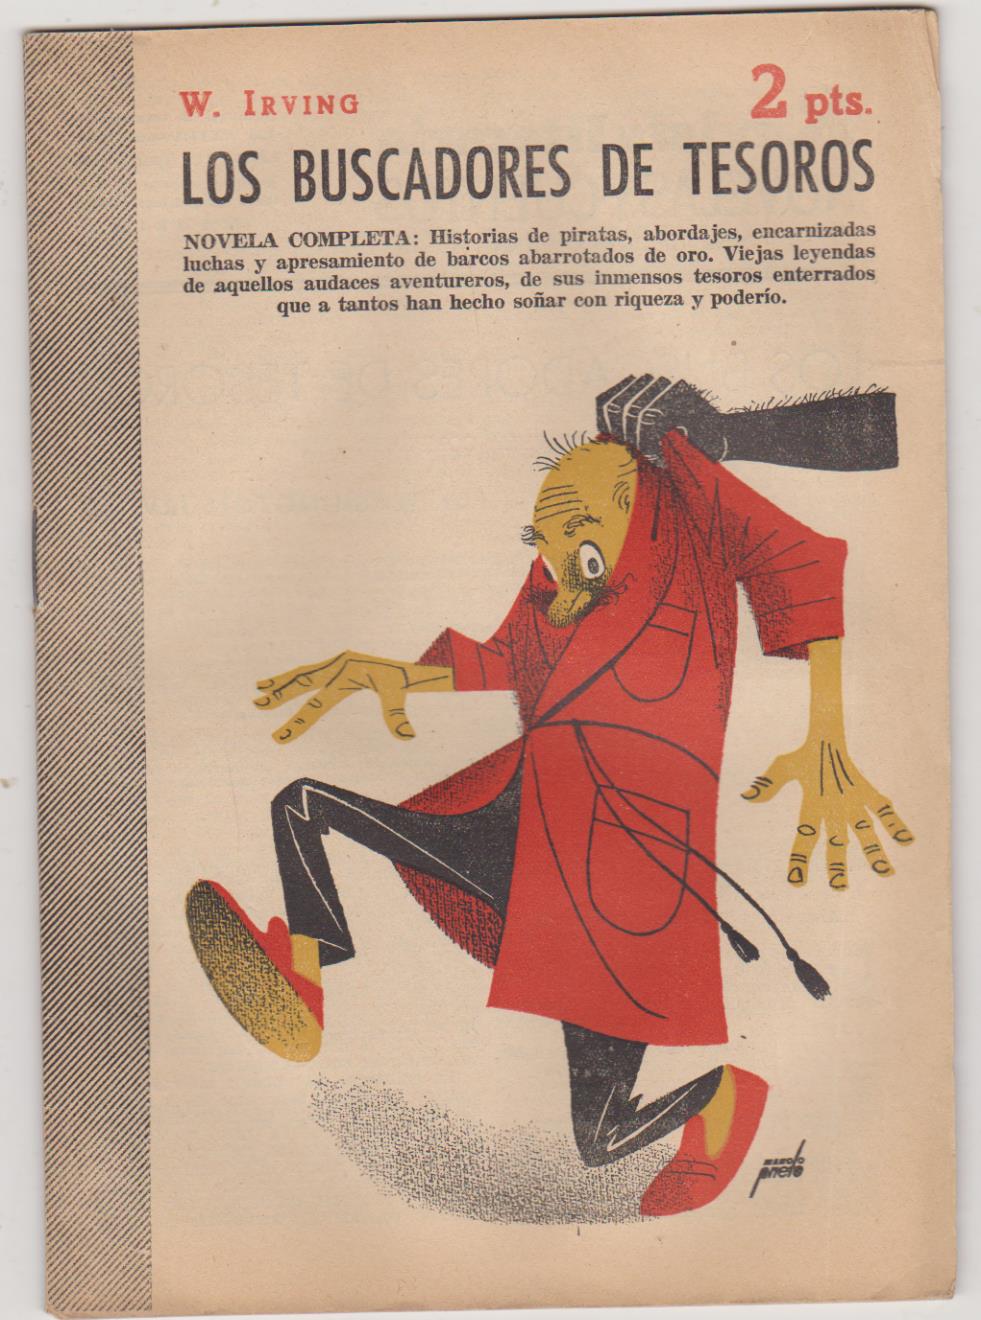 Revista Literaria nº 1329. W. Irving. Los Buscadores de Tesoros. Año 1956